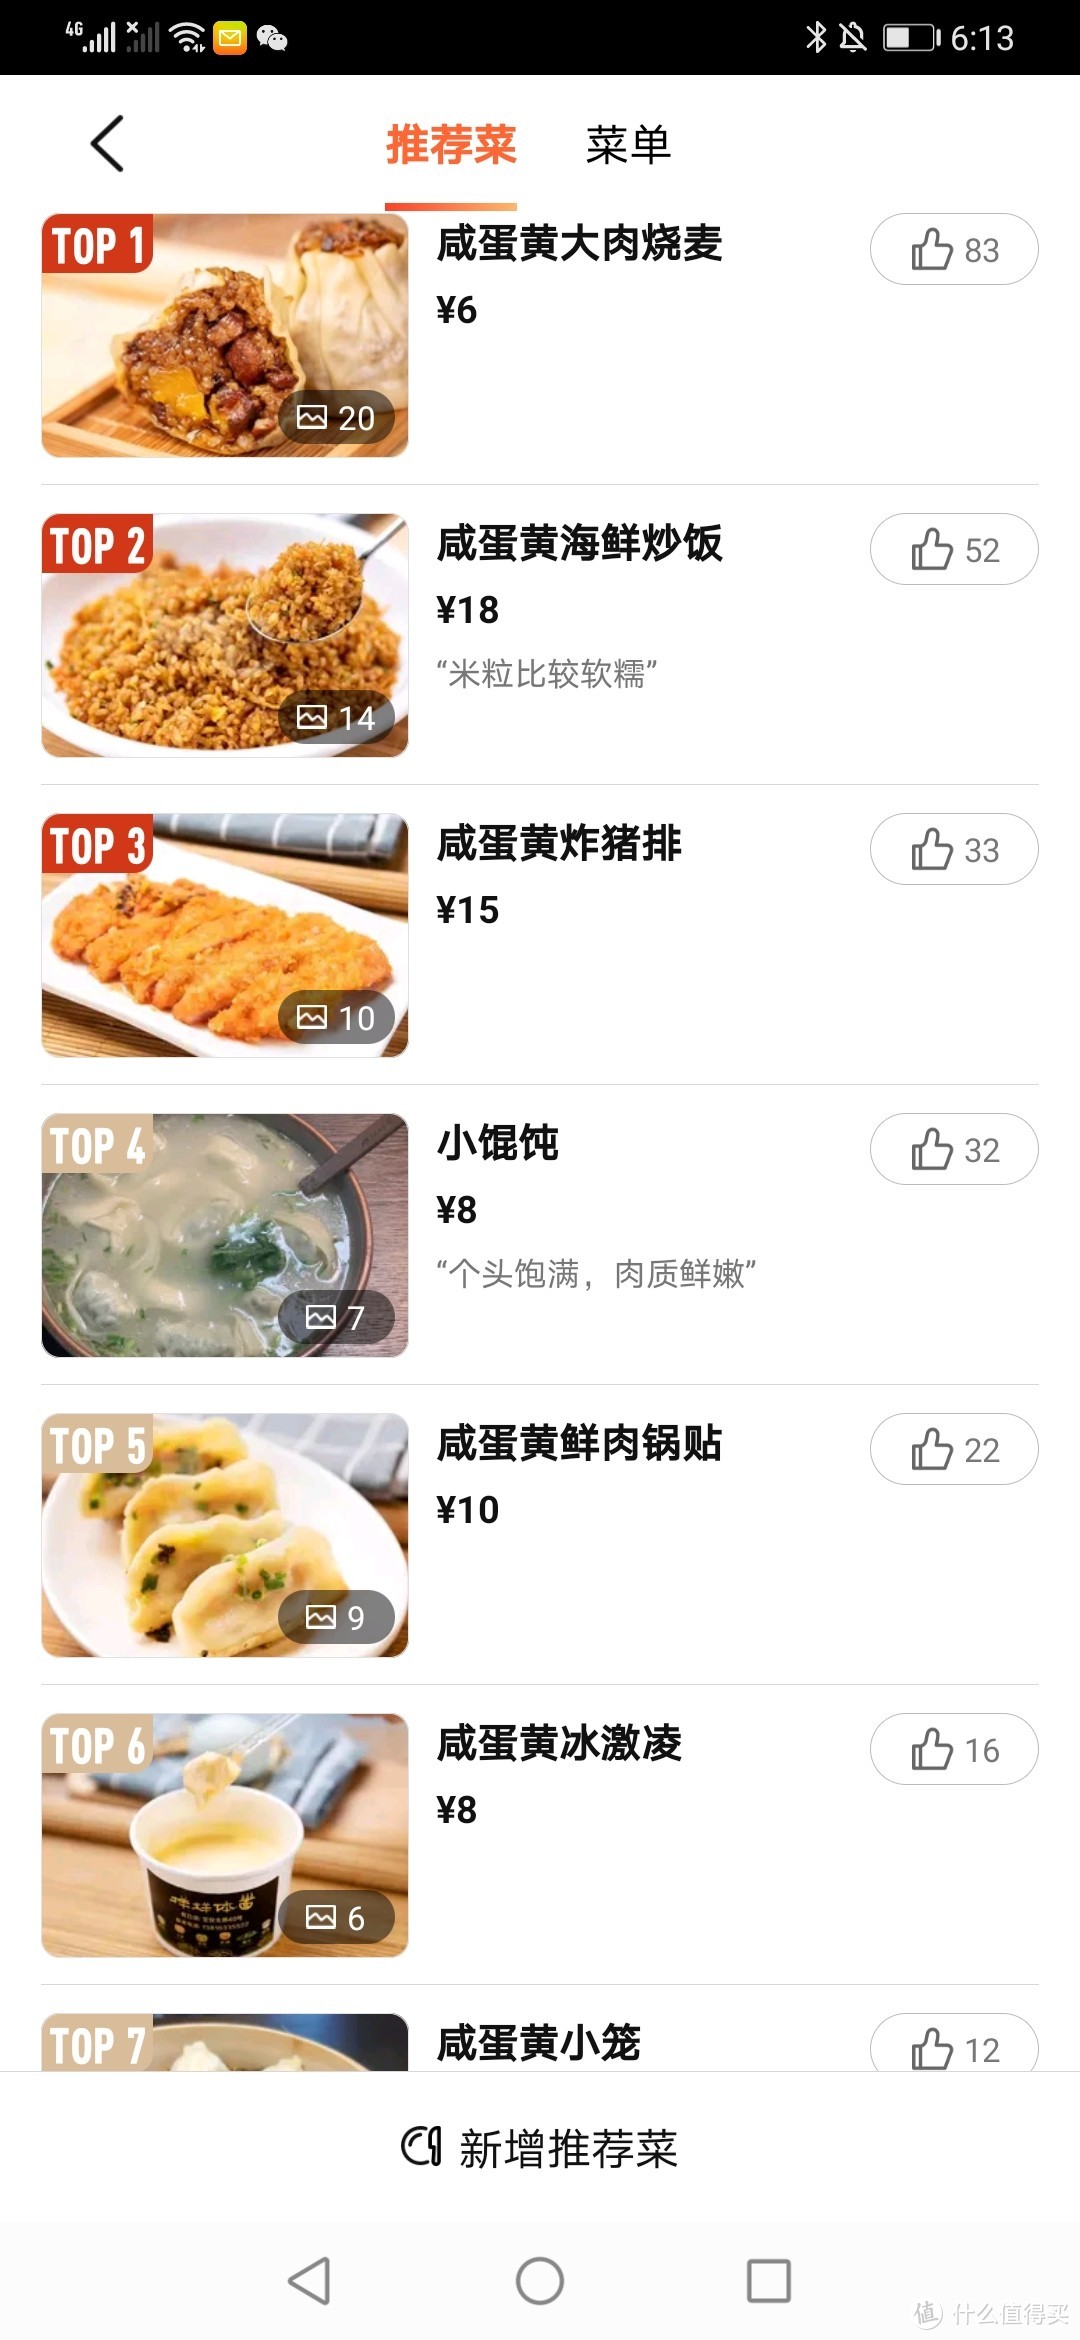 魔都什么值得吃？吃不起蟹黄，整点咸蛋黄总行吧？上海必吃榜餐厅：主打特色主题料理的“样样体面”